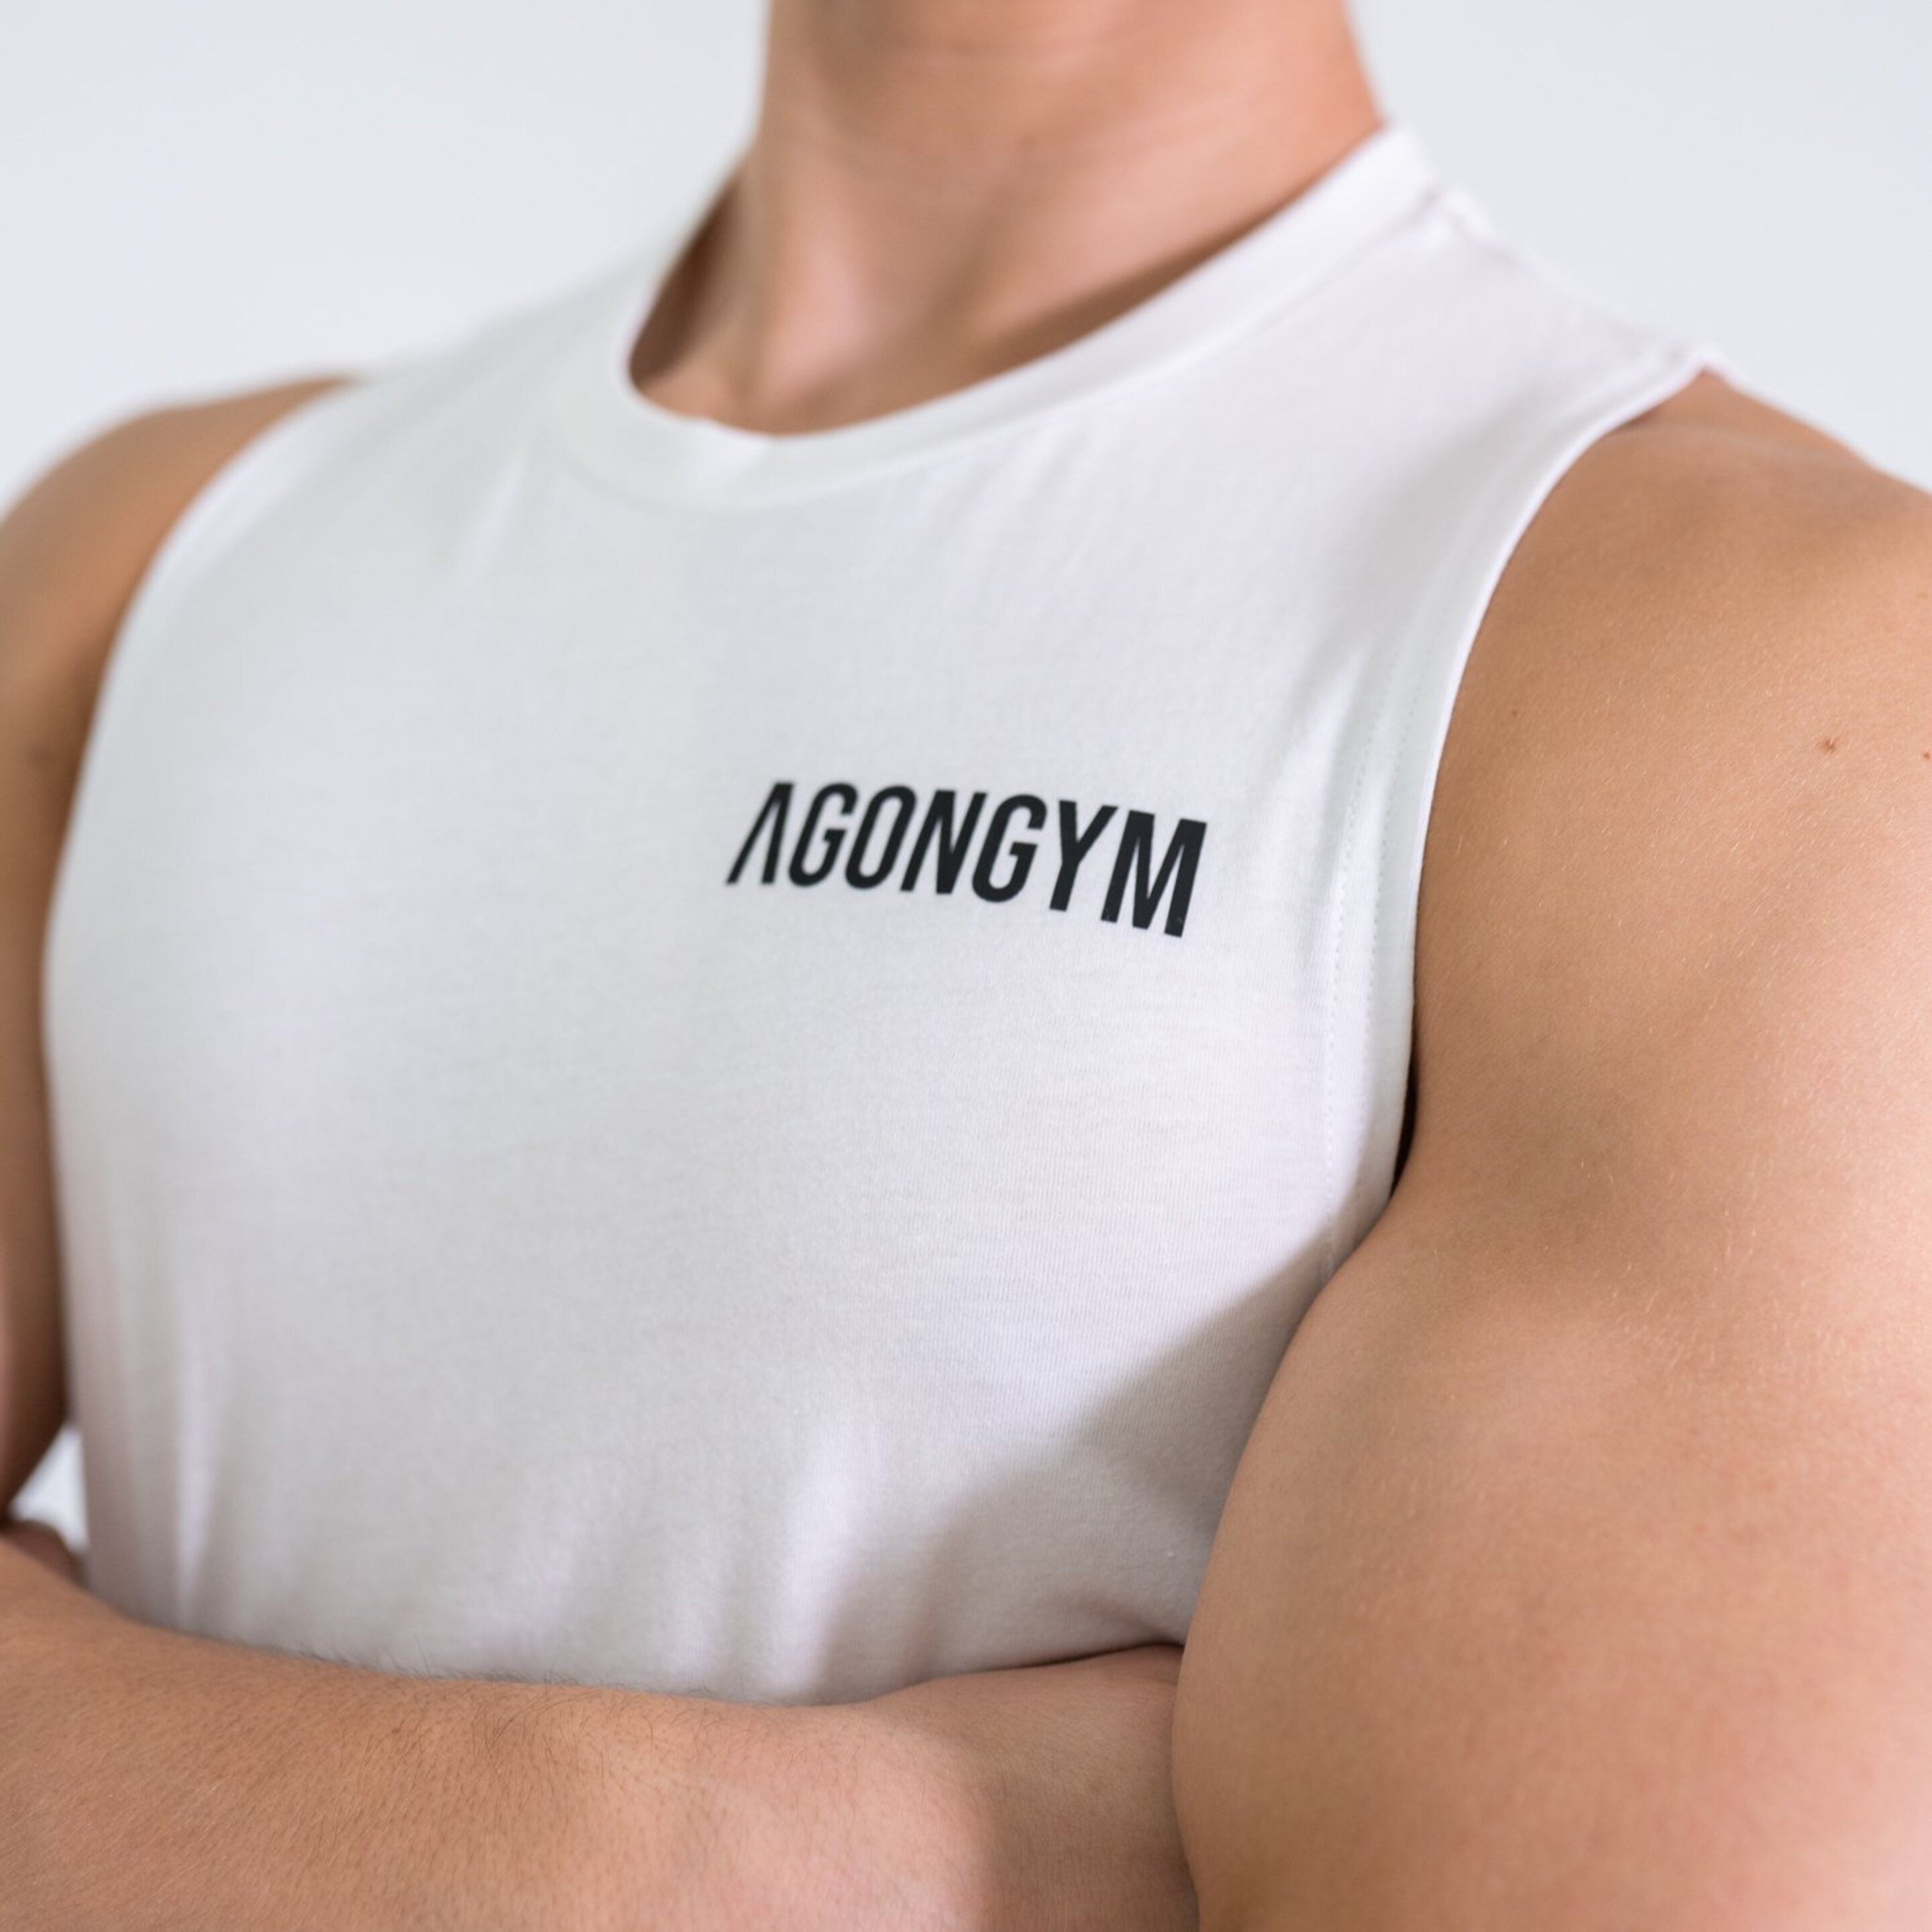 Camiseta Stylish Agongym